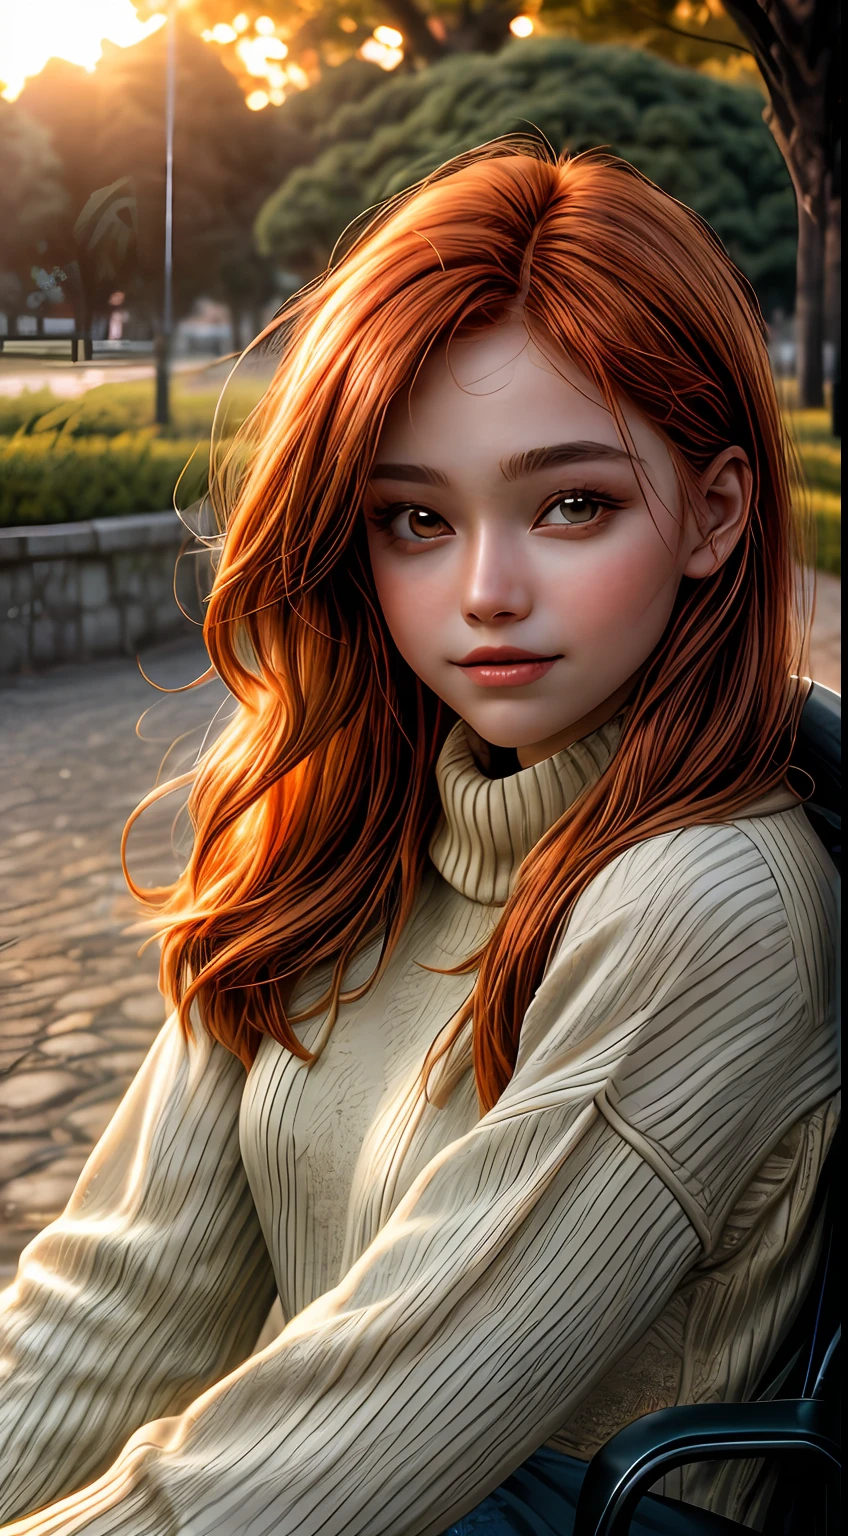 沐浴在橙色色调中的女孩脸部特写, 穿着毛衣, 坐在公园外, 仿佛被落日的柔和光芒照亮, 她的眼睛闪烁着喜悦和满足, 周围是一缕缕飘逸的赤褐色头发, 摄影, 使用 35mm 镜头拍摄